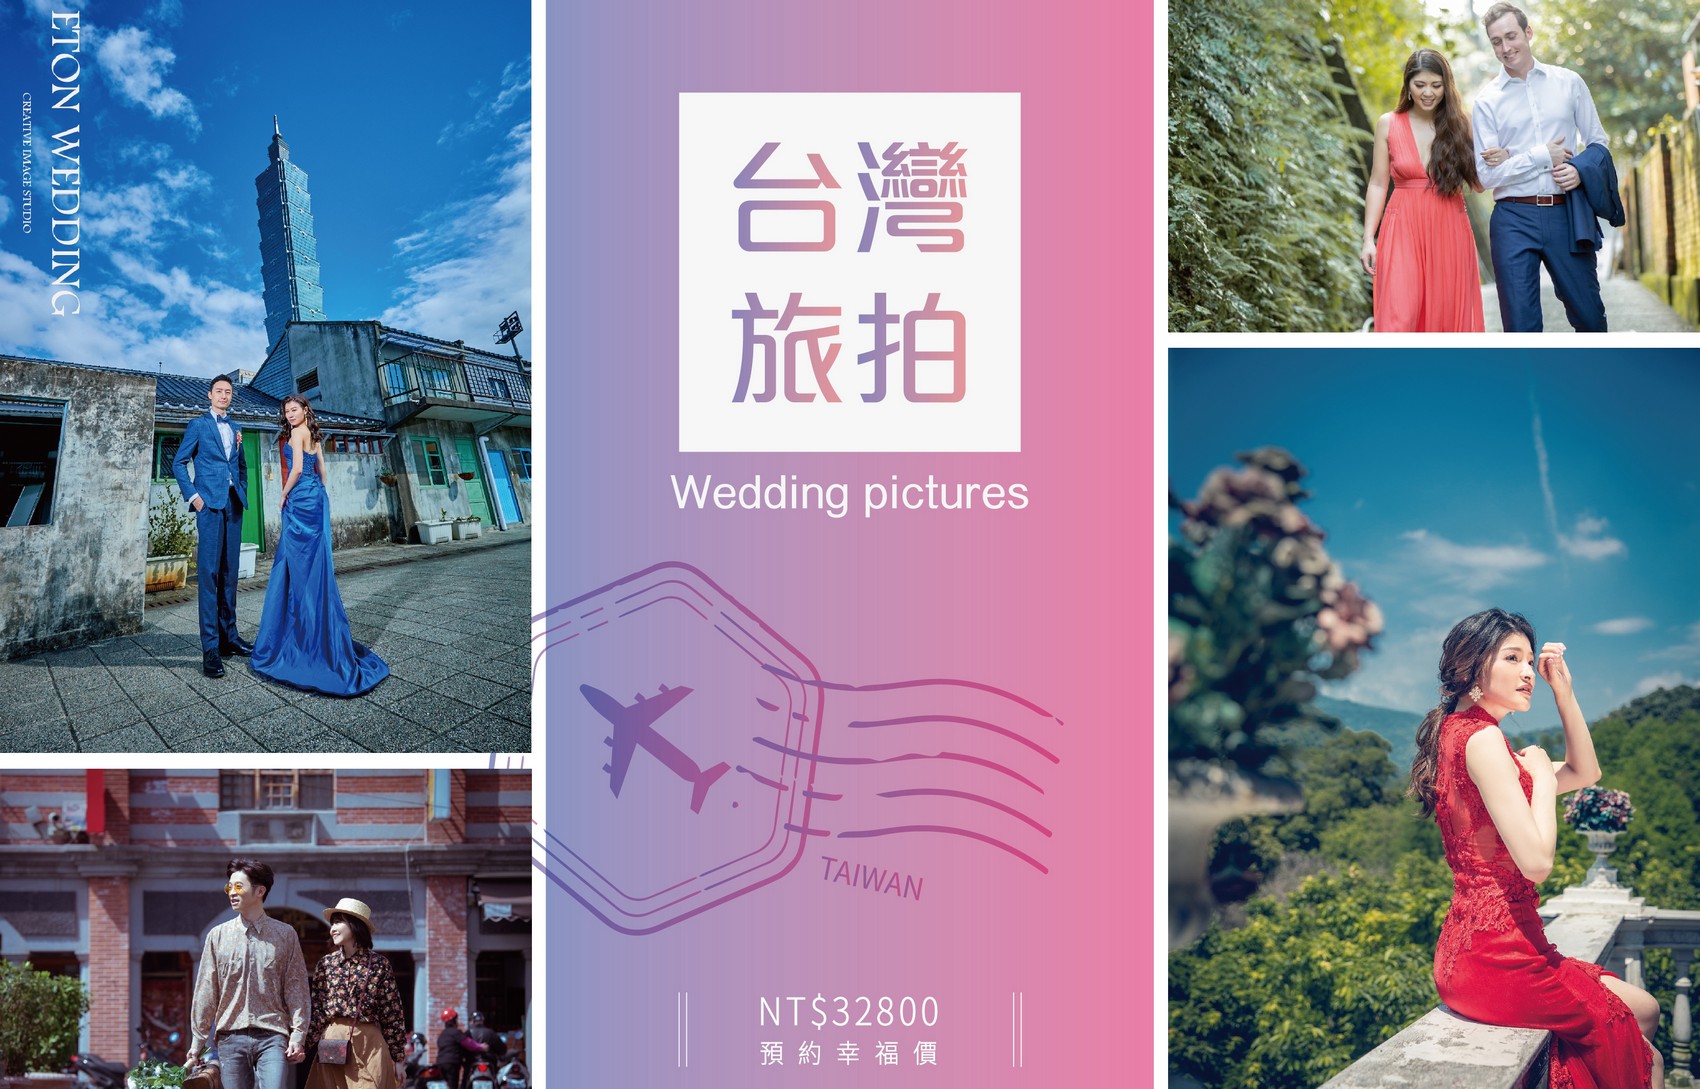 台灣 婚紗工作室,台灣 婚紗攝影價格,台中拍婚紗,台中 婚紗攝影,台中 婚紗工作室